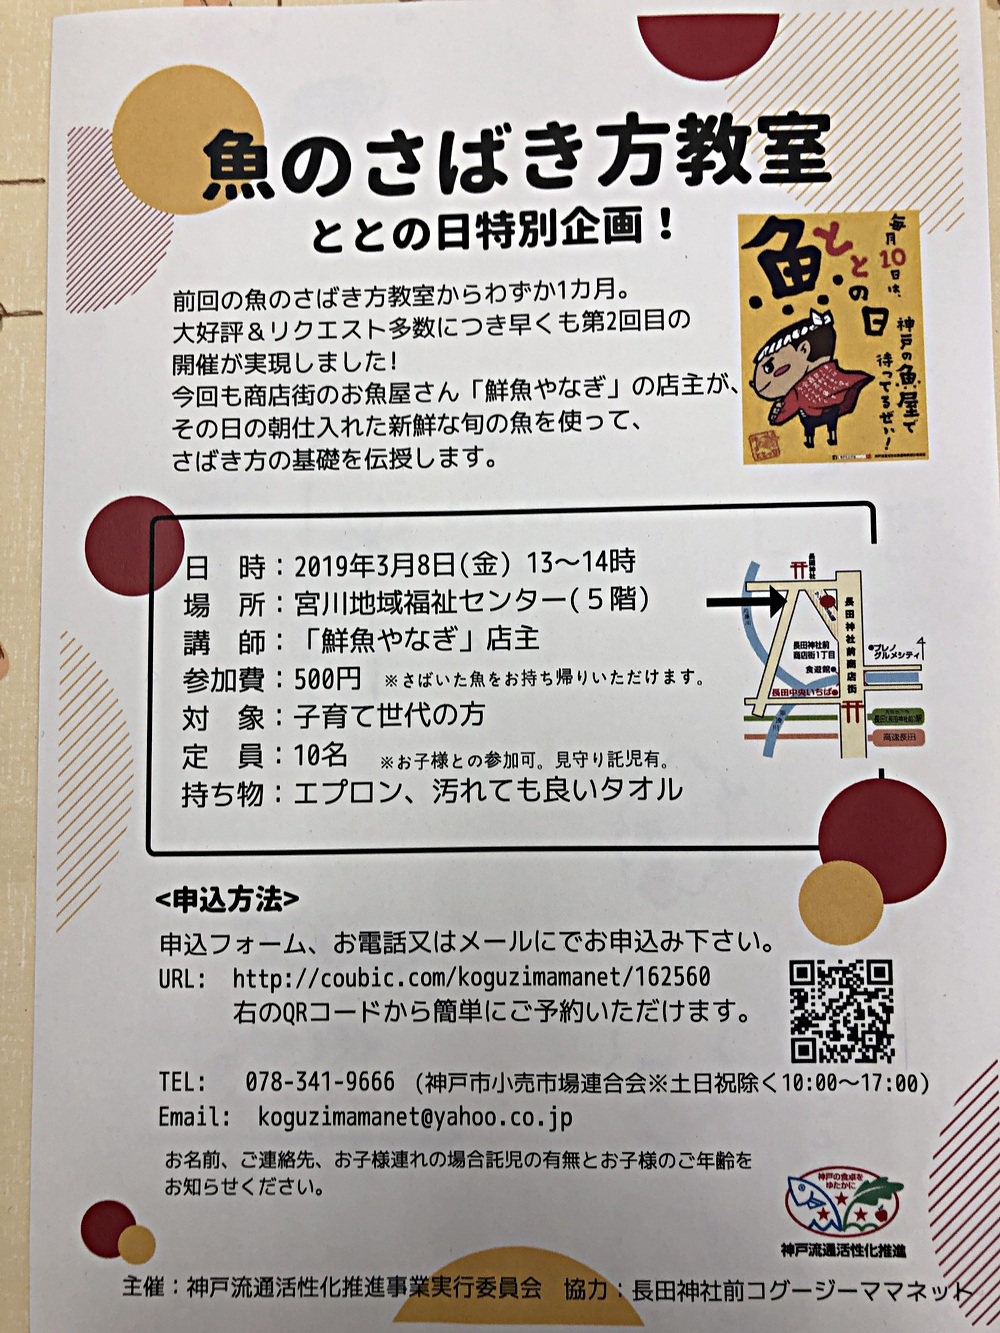 魚のさばき方教室 | 兵庫県神戸市長田区 | イベント